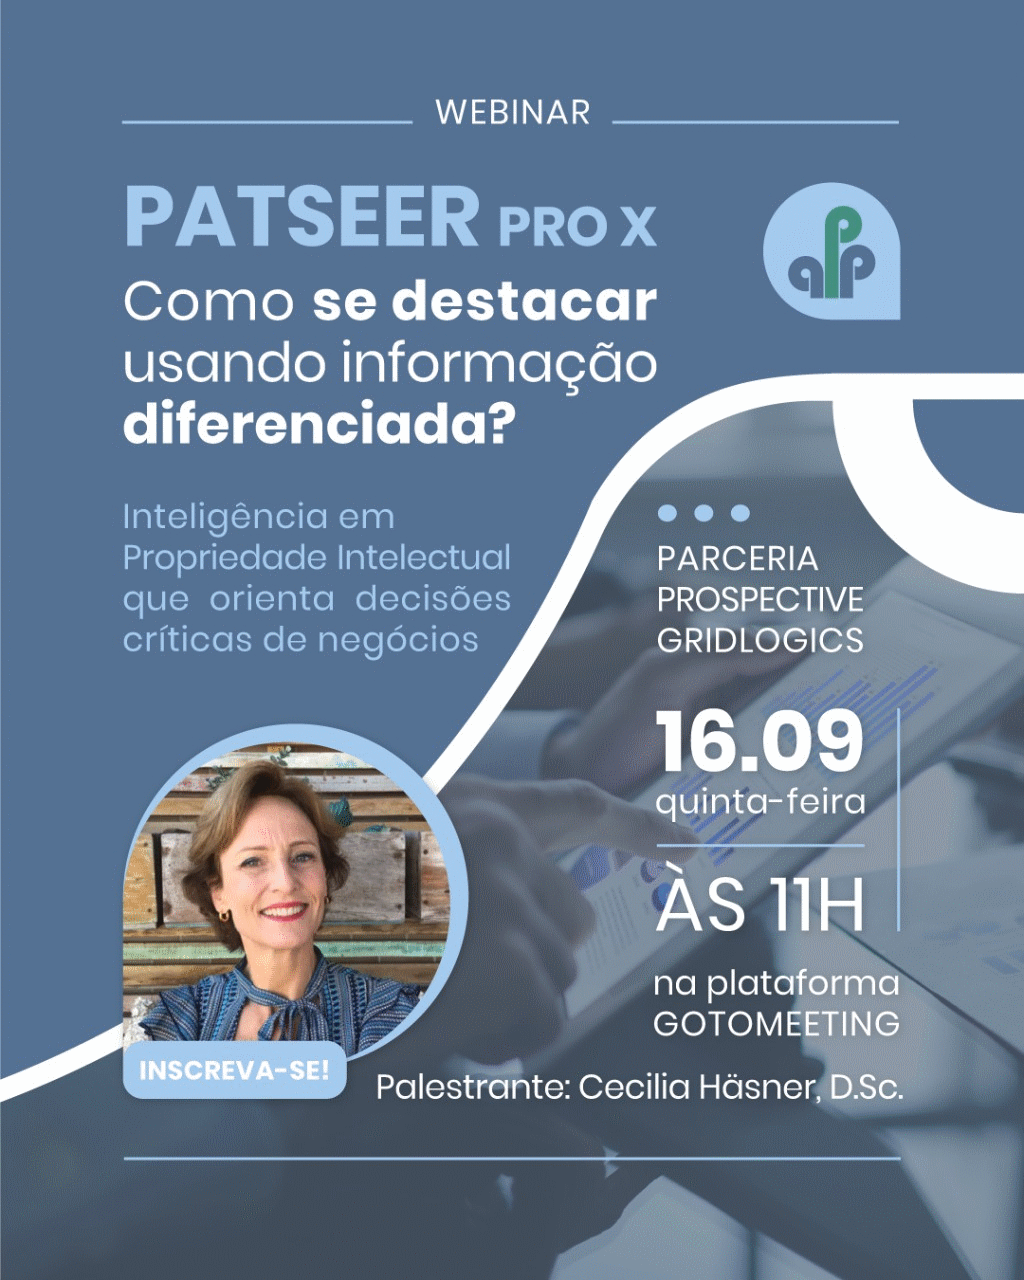 webinar on PatSeer Pro X